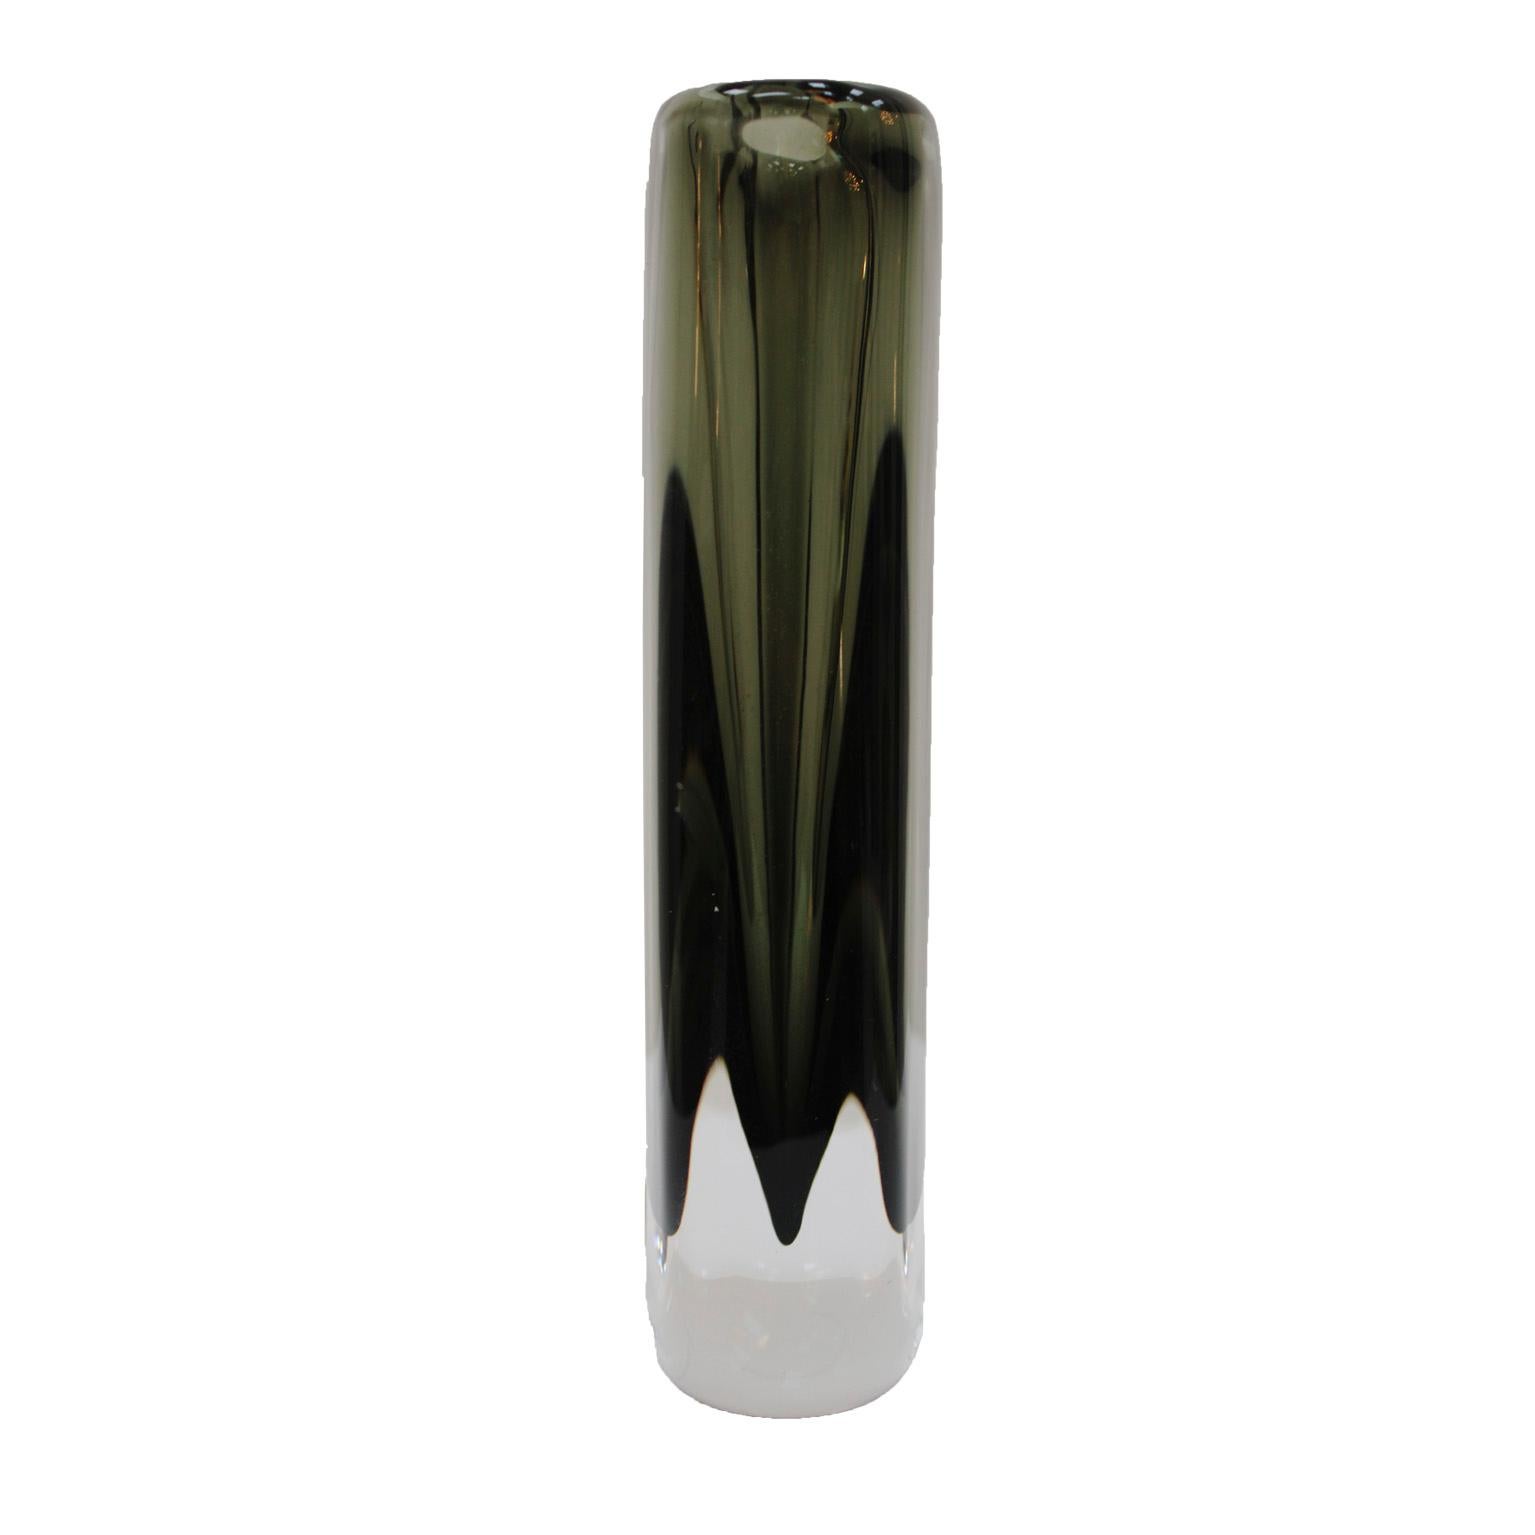 Mid-Century Modern Midcentury Black Sommerso Murano Glass Vase by Nils Landberg for Orrefors 1960 For Sale